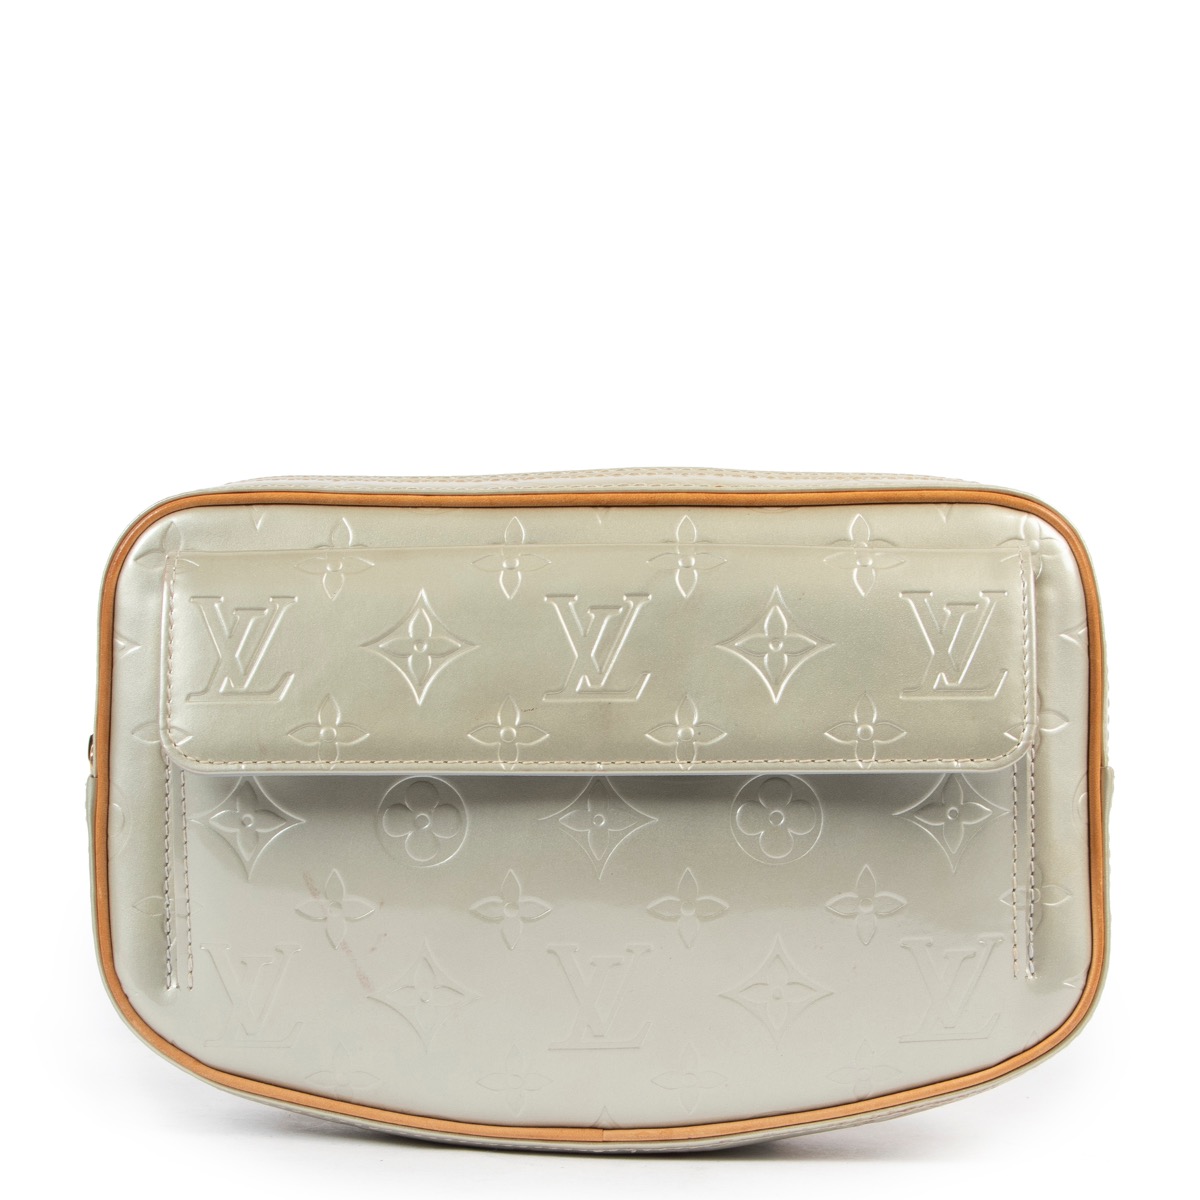 Louis Vuitton Vanilla Rochelle Belt Bag Waist Pouch Fanny Pack 860232